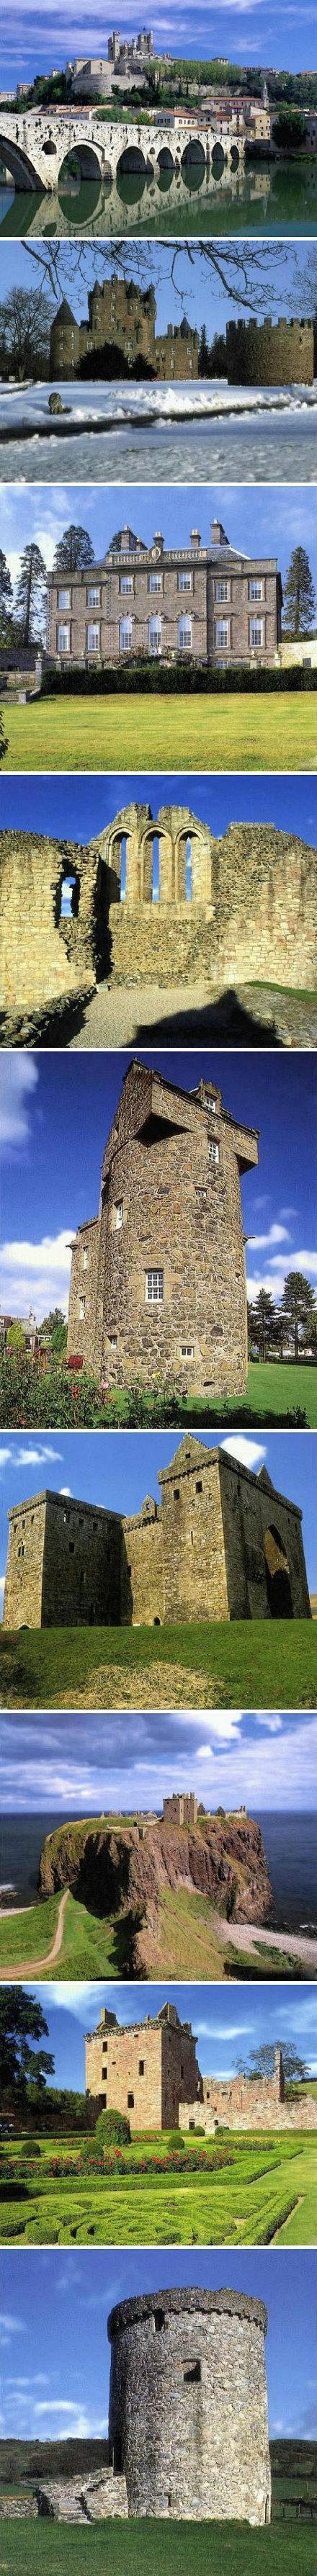 【苏格兰古堡】是苏格兰著名的独特建筑。大...